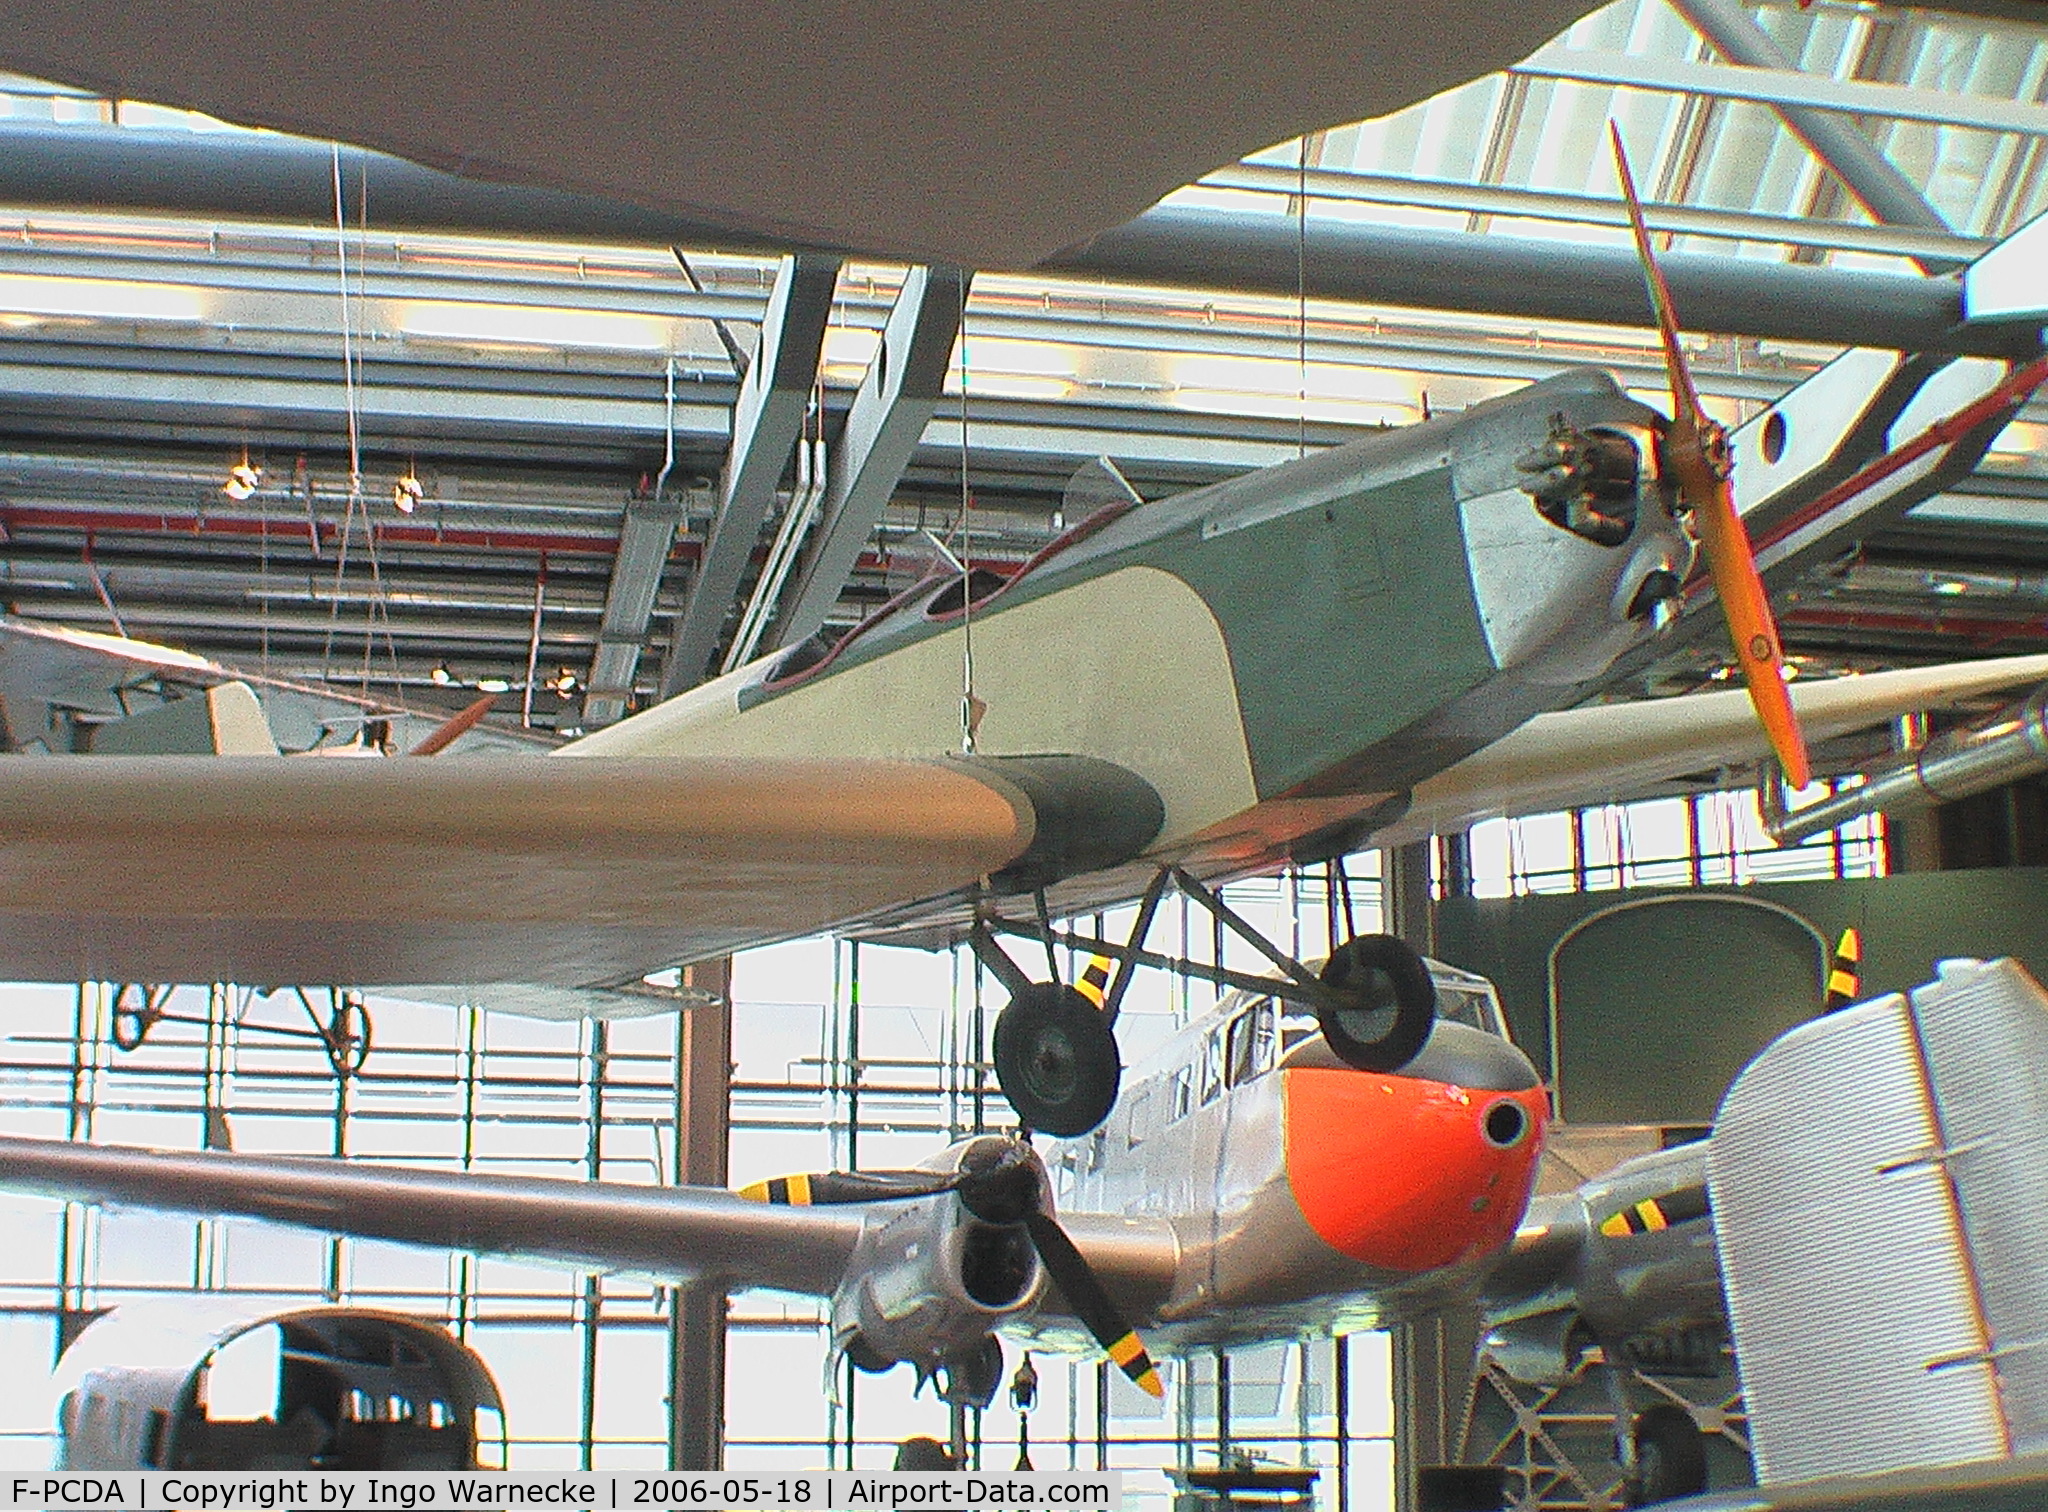 F-PCDA, Klemm L25B C/N 138, Klemm L 25 at the Deutsches Technikmuseum, Berlin